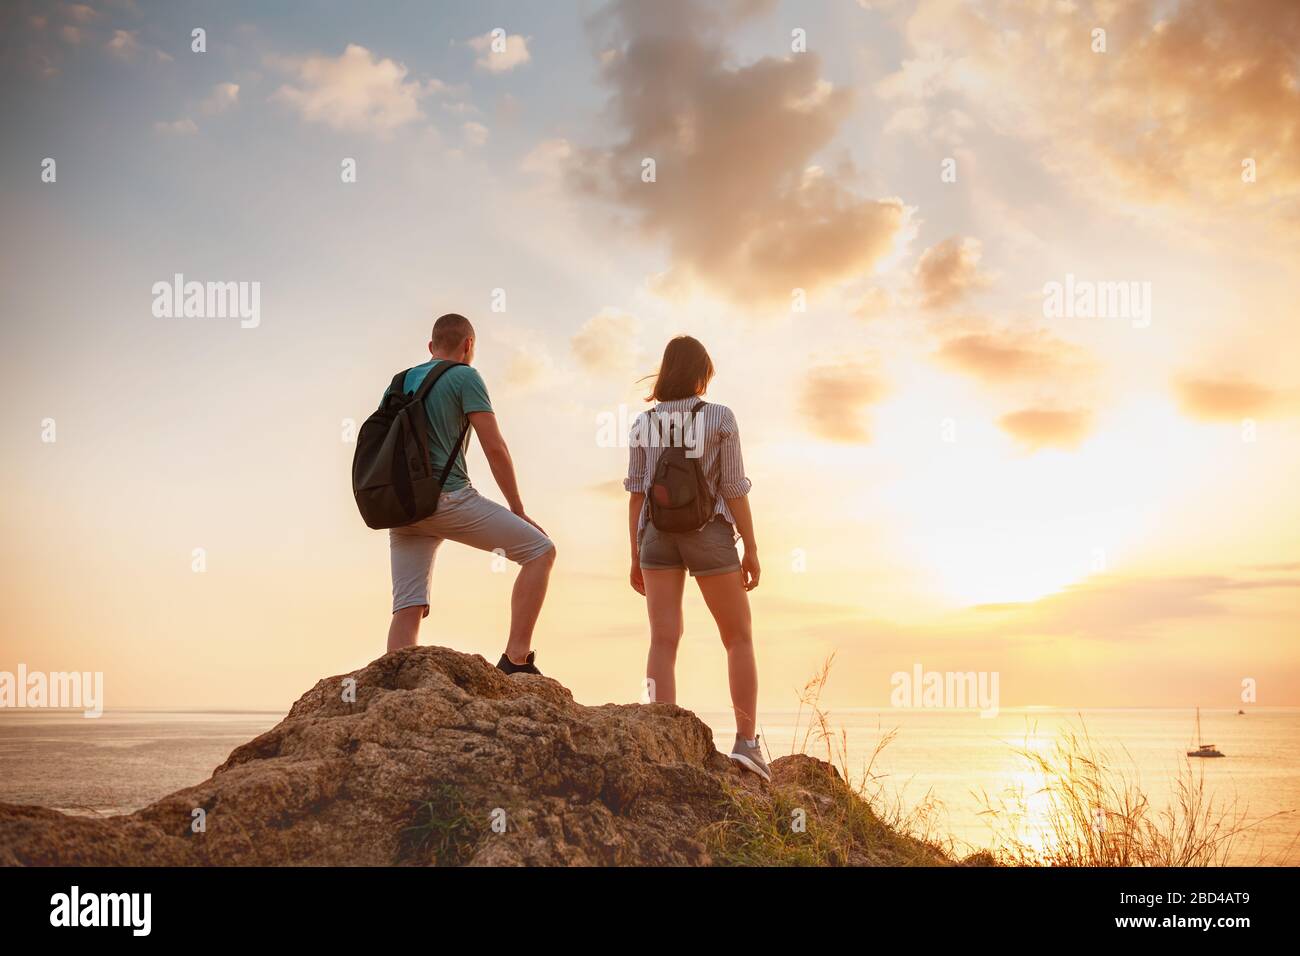 Zwei junge Wanderer, männlich und weiblich, stehen auf einem großen Felsen und blicken auf das Meer und den Himmel bei Sonnenuntergang Stockfoto